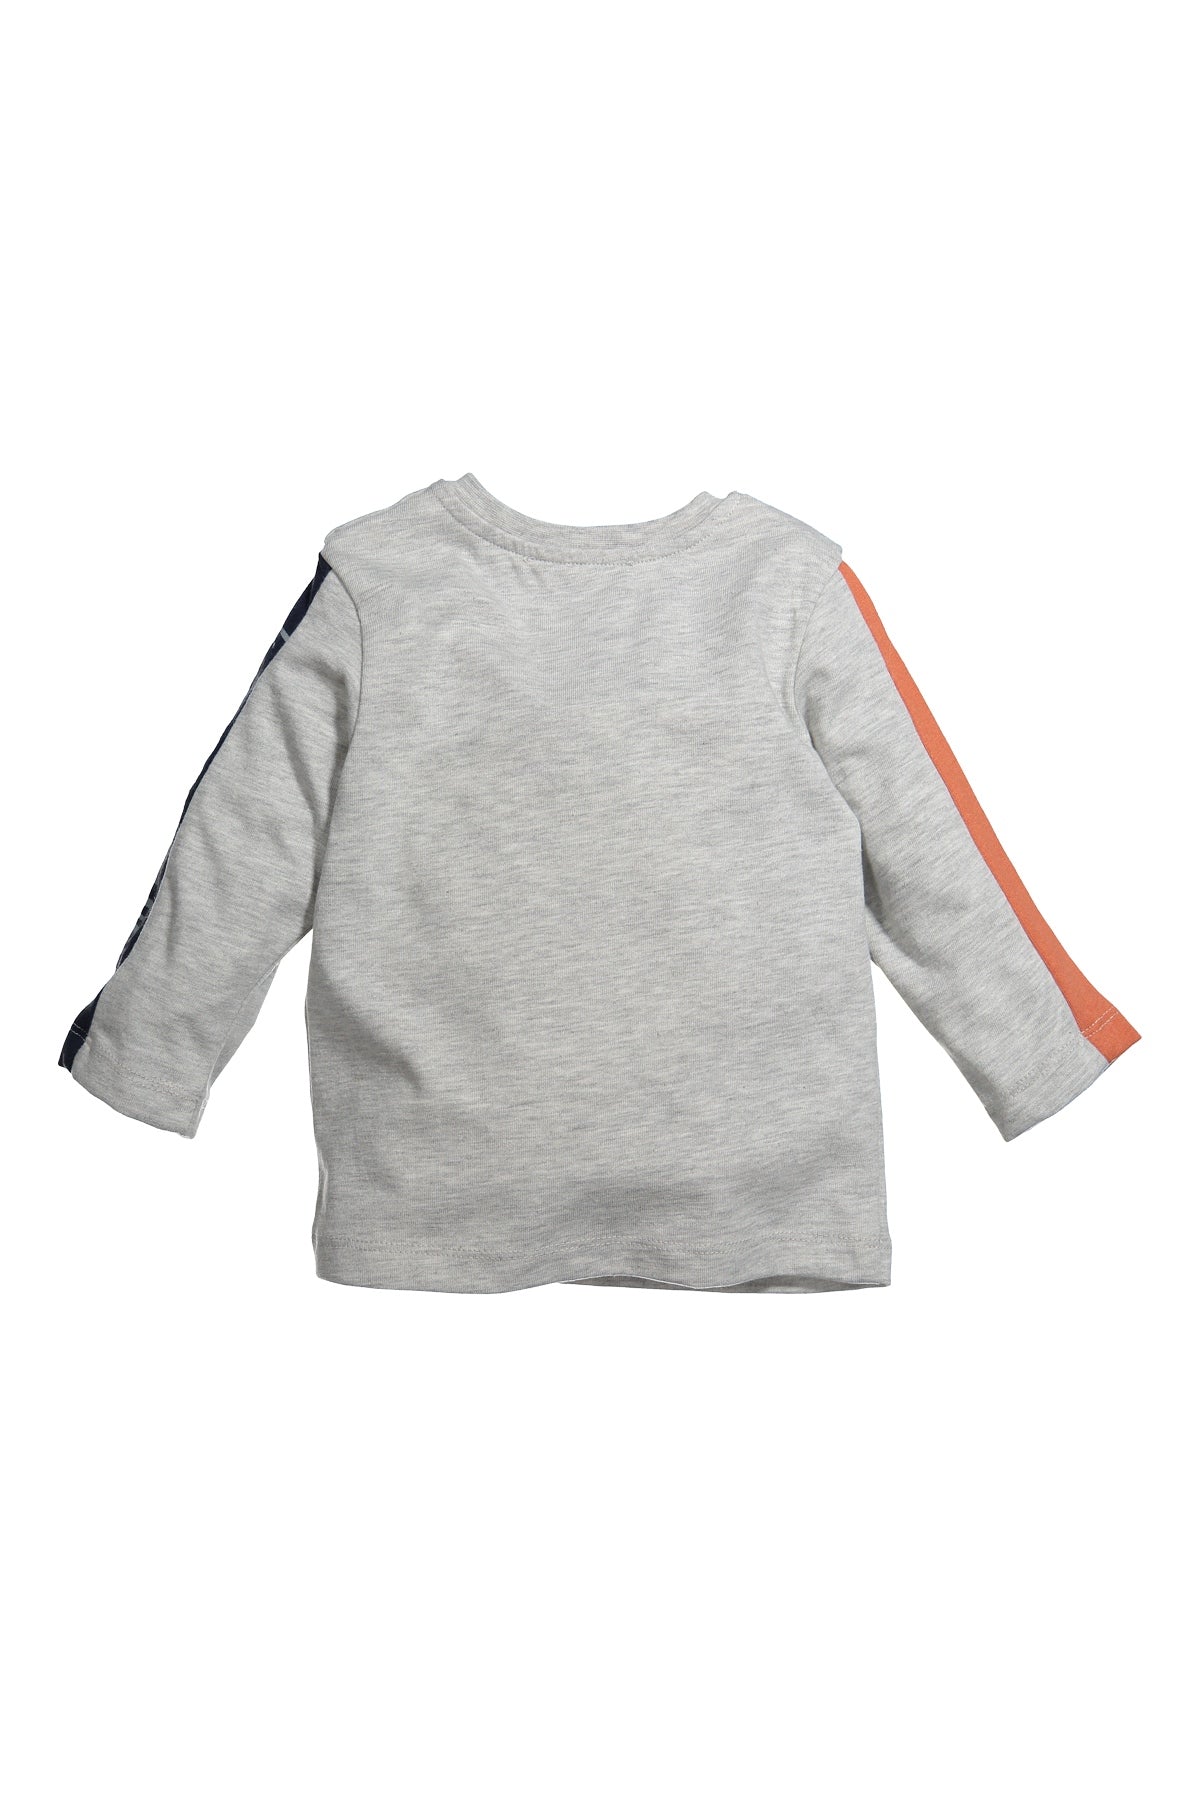 Erkek Bebek Baskılı Sweatshirt (12ay-4yaş)-1